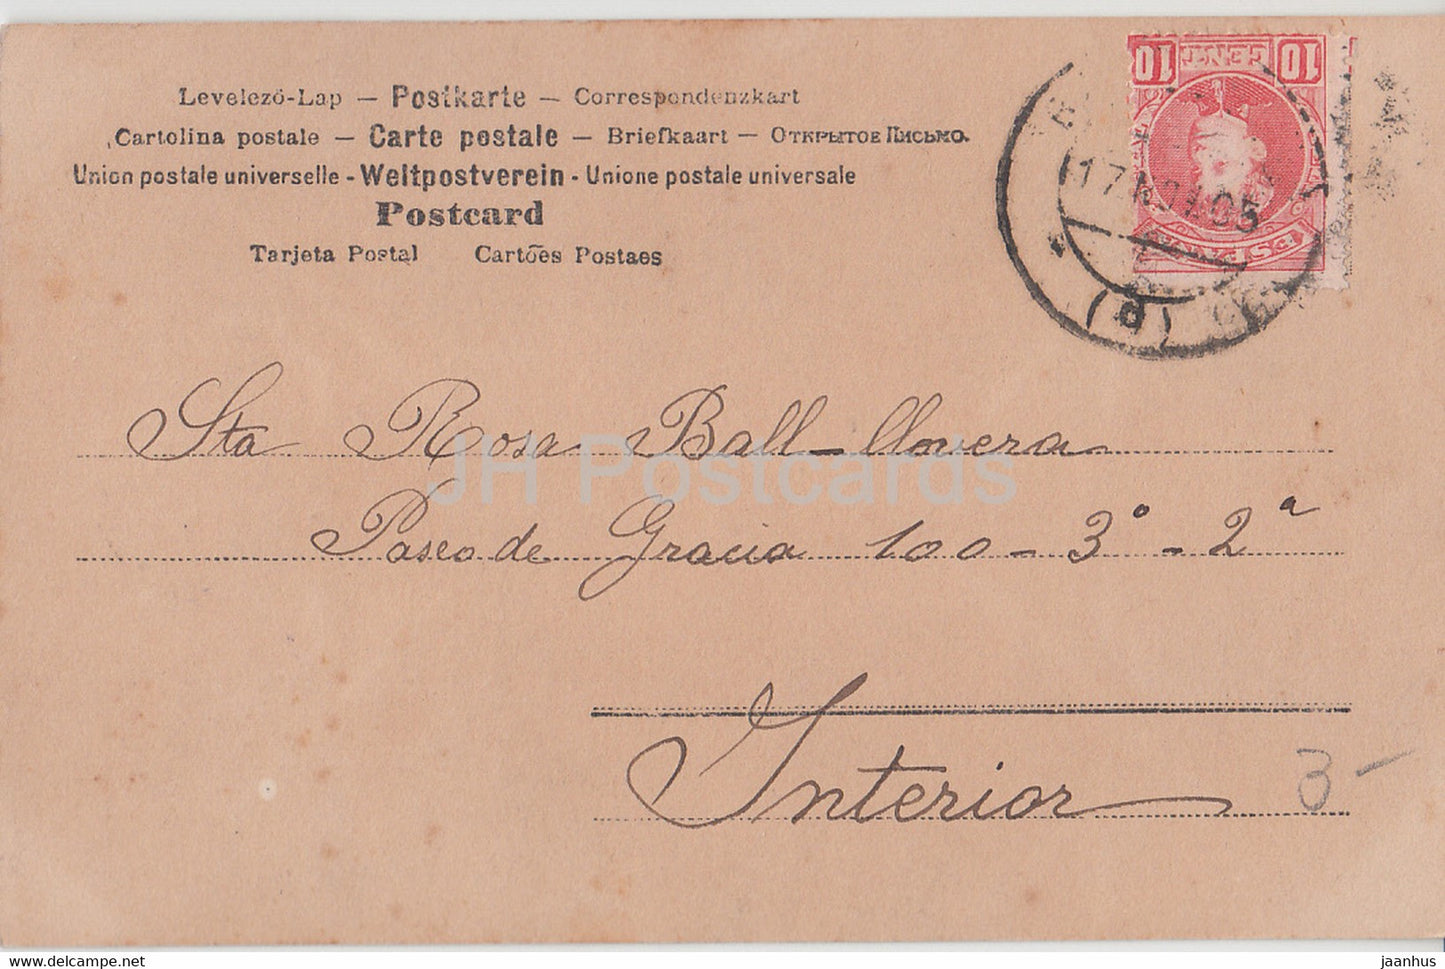 fille - enfants - 1758 - carte postale ancienne - Années 1900 - Espagne - utilisé